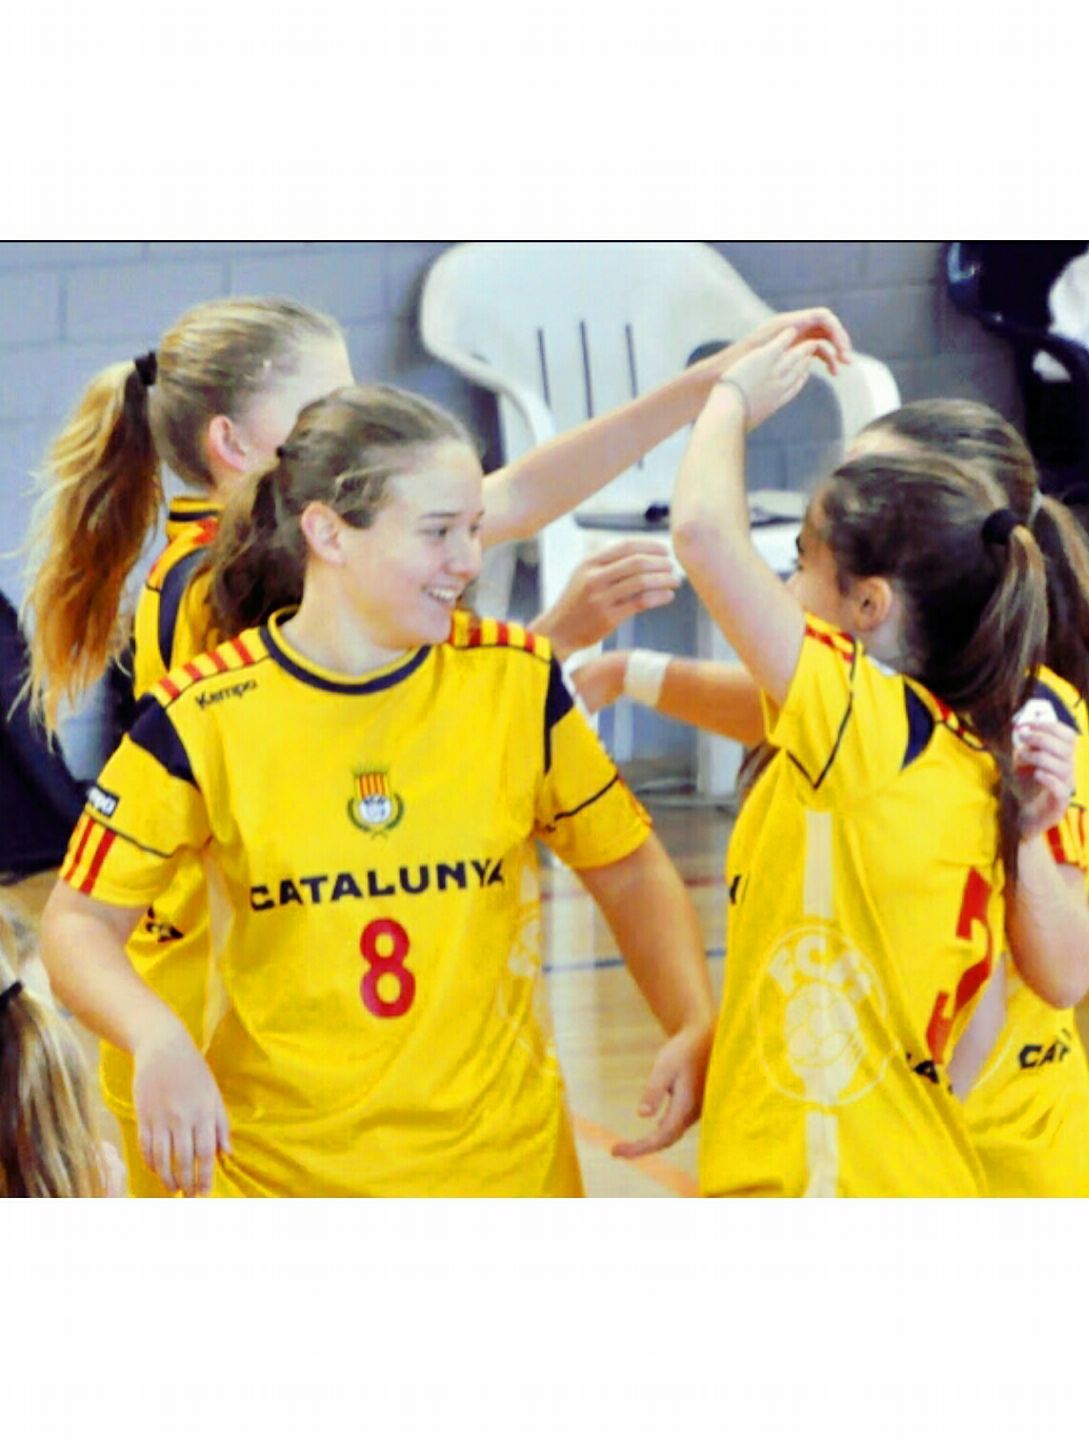 La selecció catalana cadet, amb Ariadna Muñoz, s'estrena a l'estatal amb empat contra Andalusia (28-28)